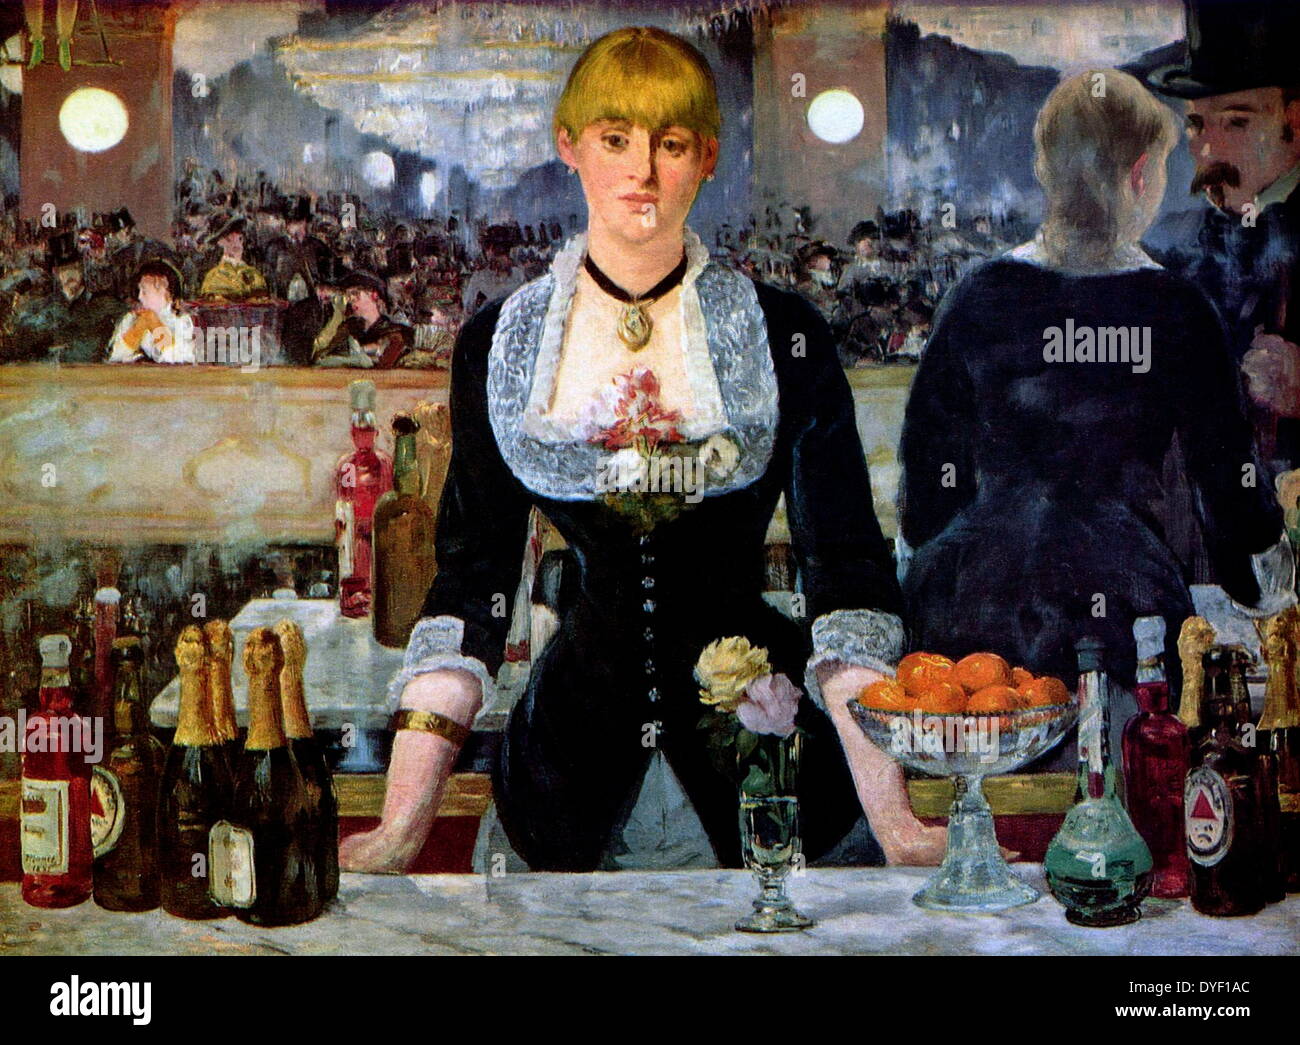 Un Bar a Folies-Bergère (in francese 'Onu bar aux Folies Bergère"), dipinte e esposta al Salone di Parigi nel 1882. Esso raffigura una scena in Folies Bergère nightclub di Parigi ed è stata l'ultima grande opera dal pittore francese Édouard Manet. Foto Stock